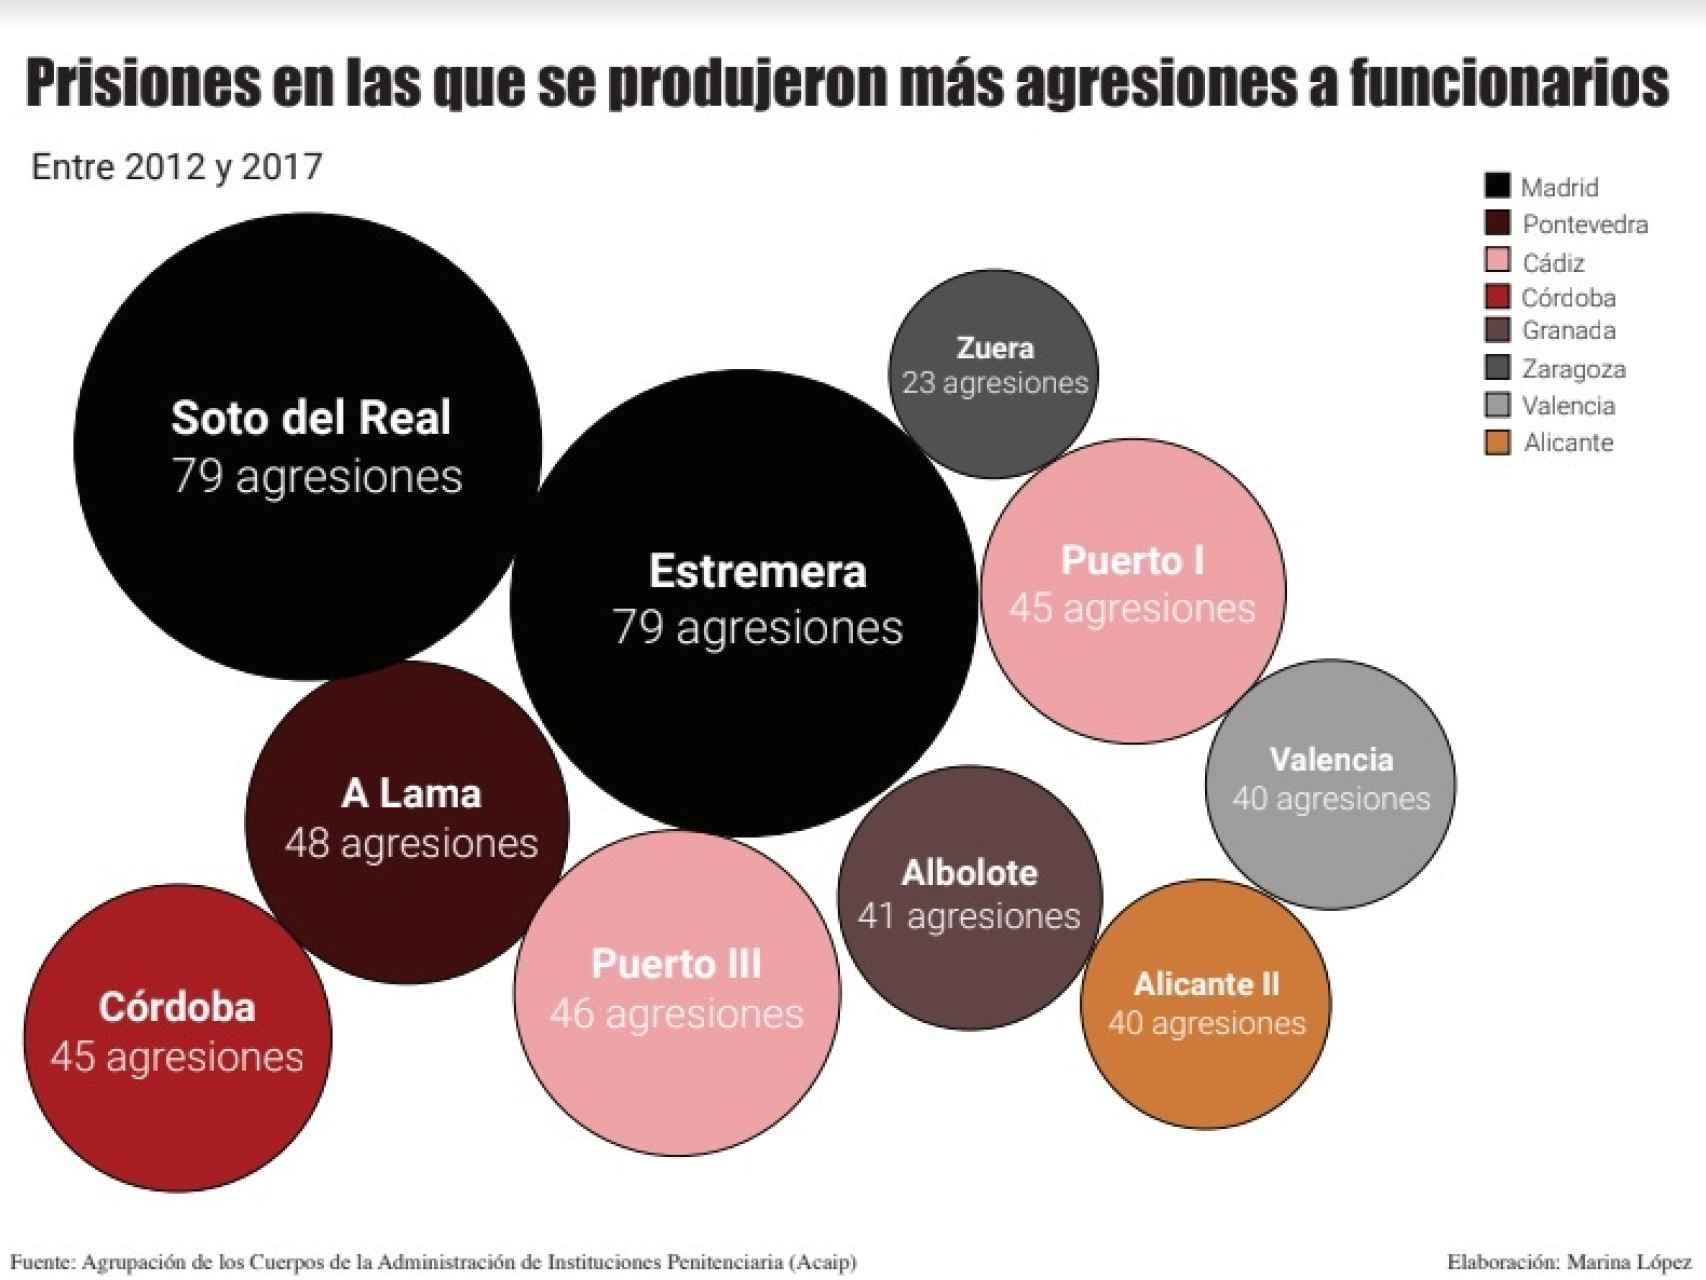 Estas son las cifras de agresiones a funcionarios en las cárceles españolas